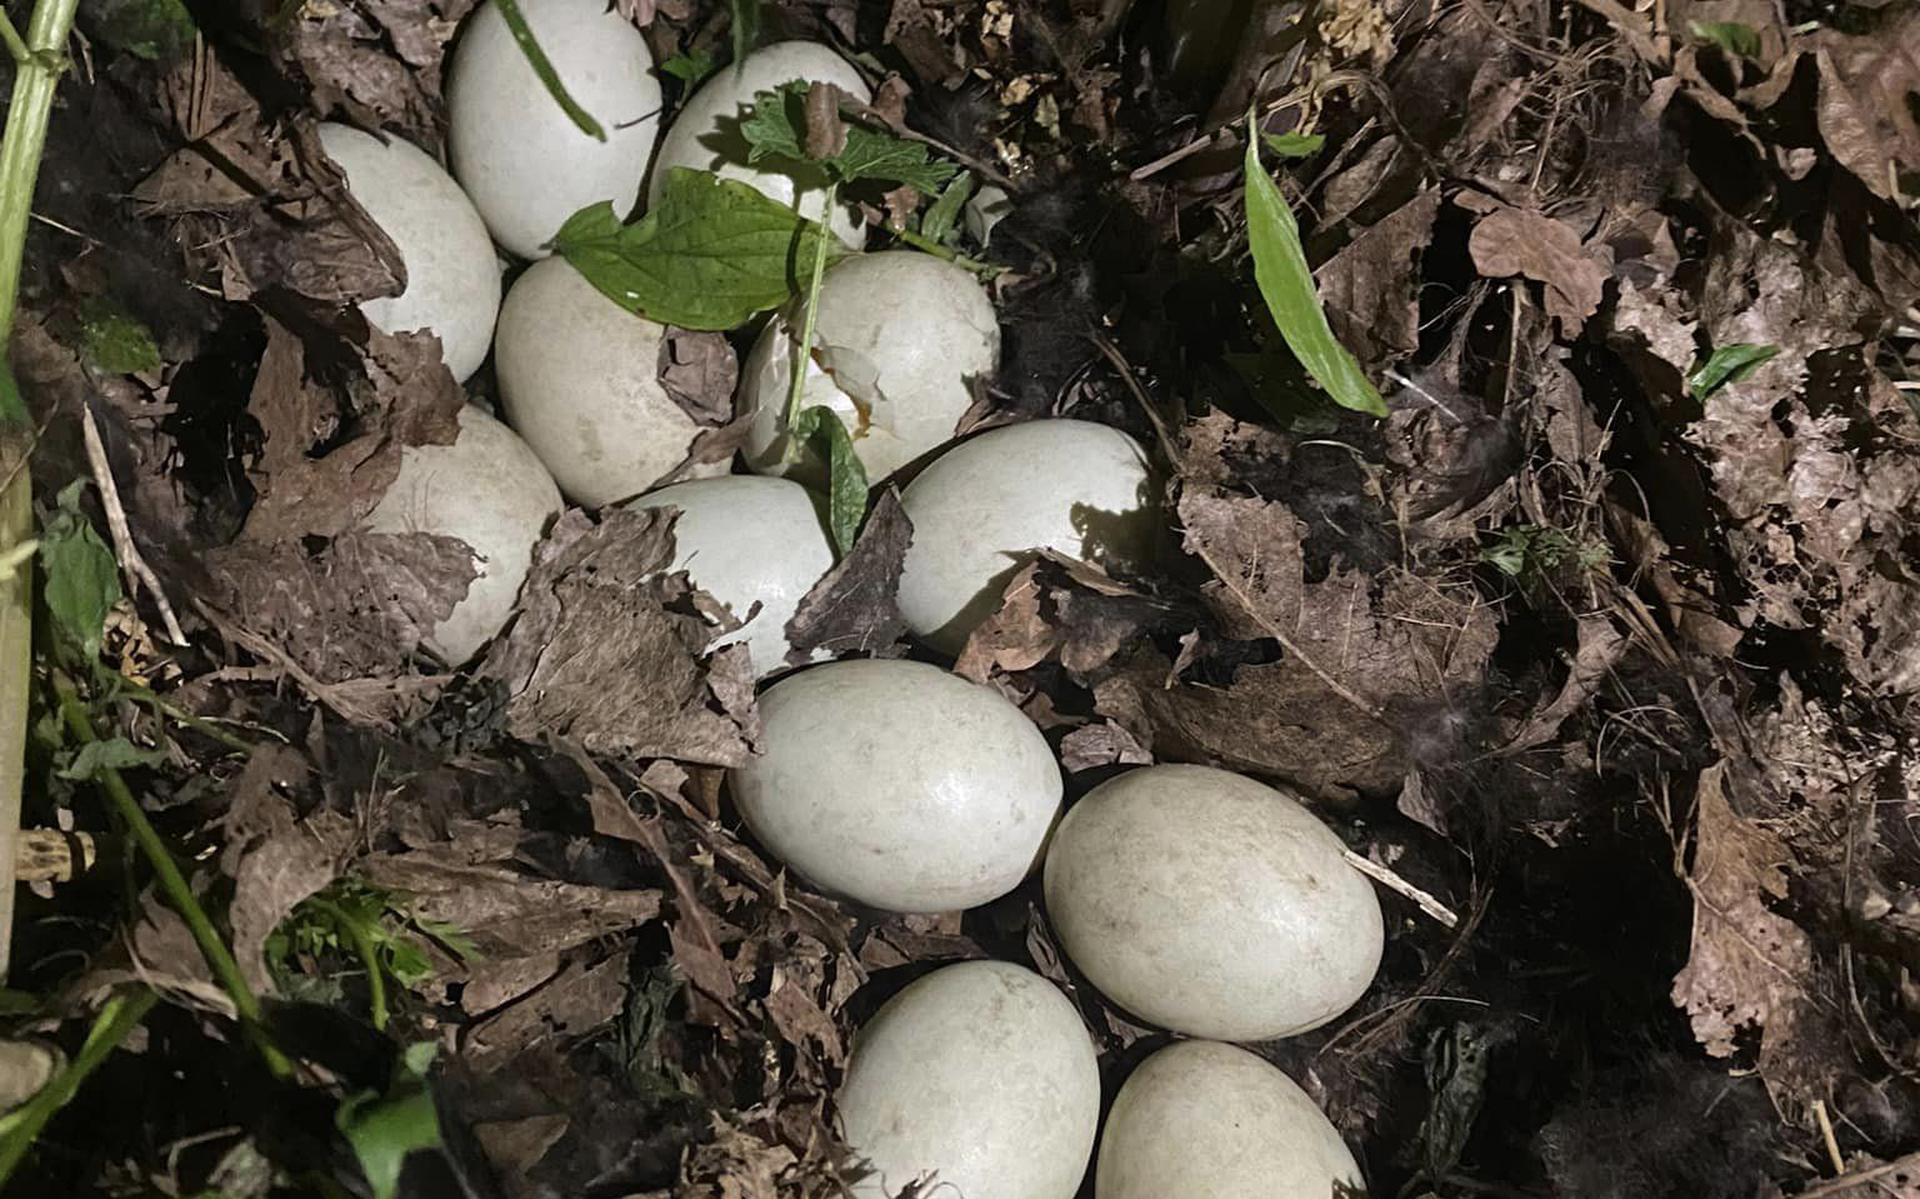 De twaalf eieren waar de eend op broedde. 